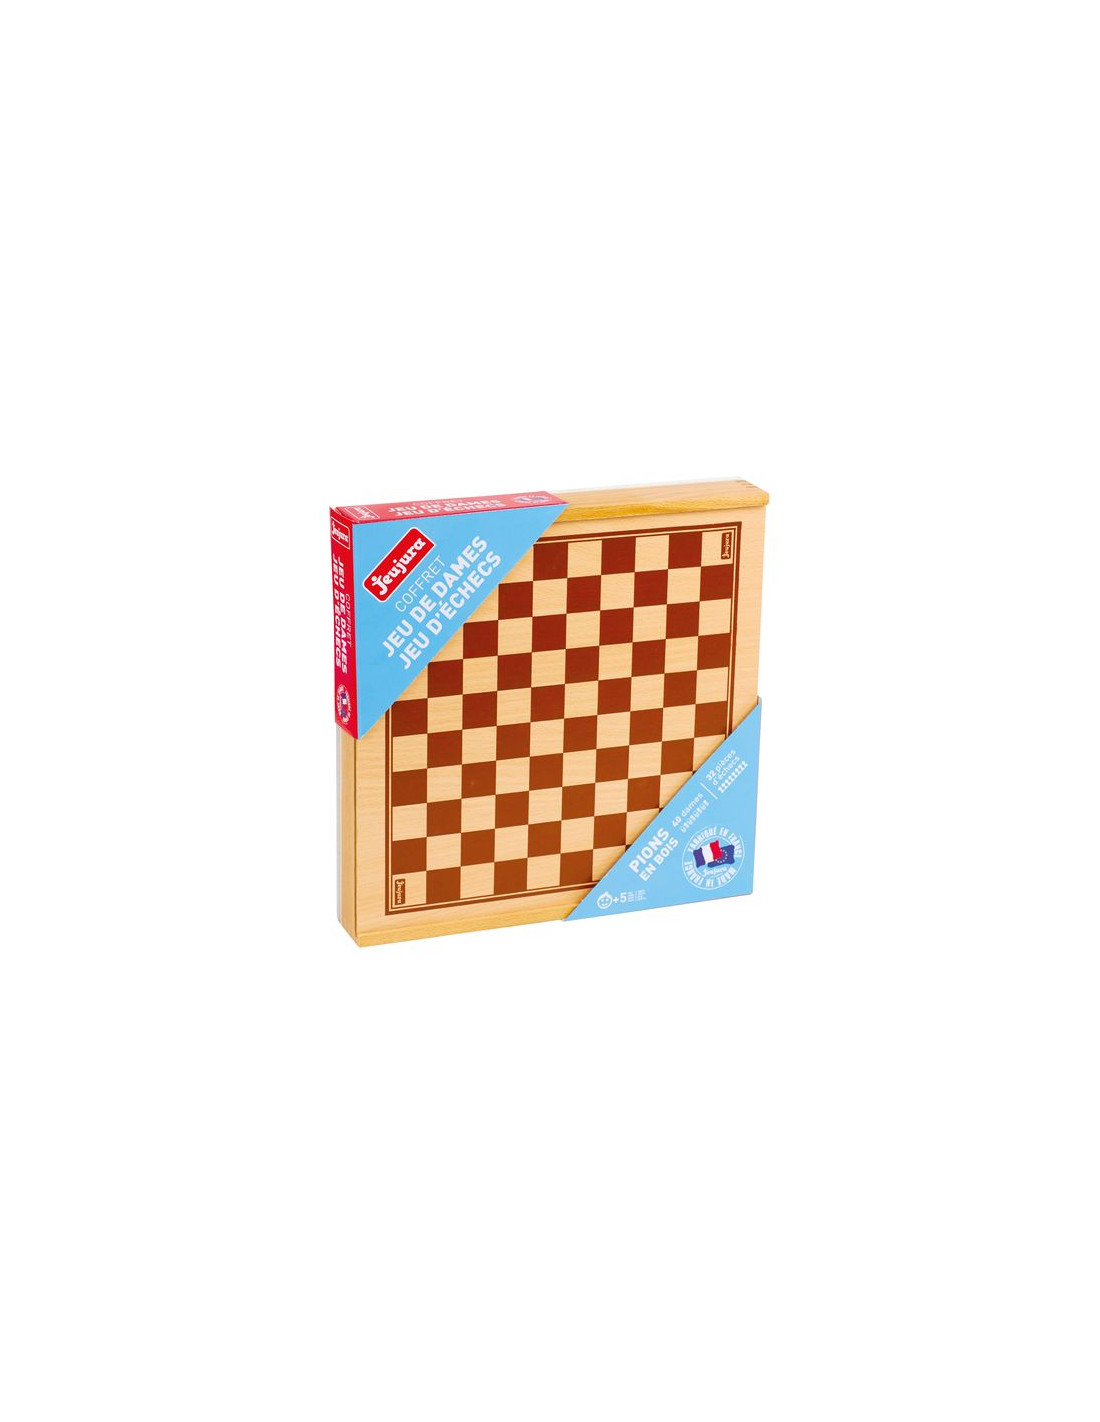 Jeux de dames et d'échecs - coffret réversible et pions en bois